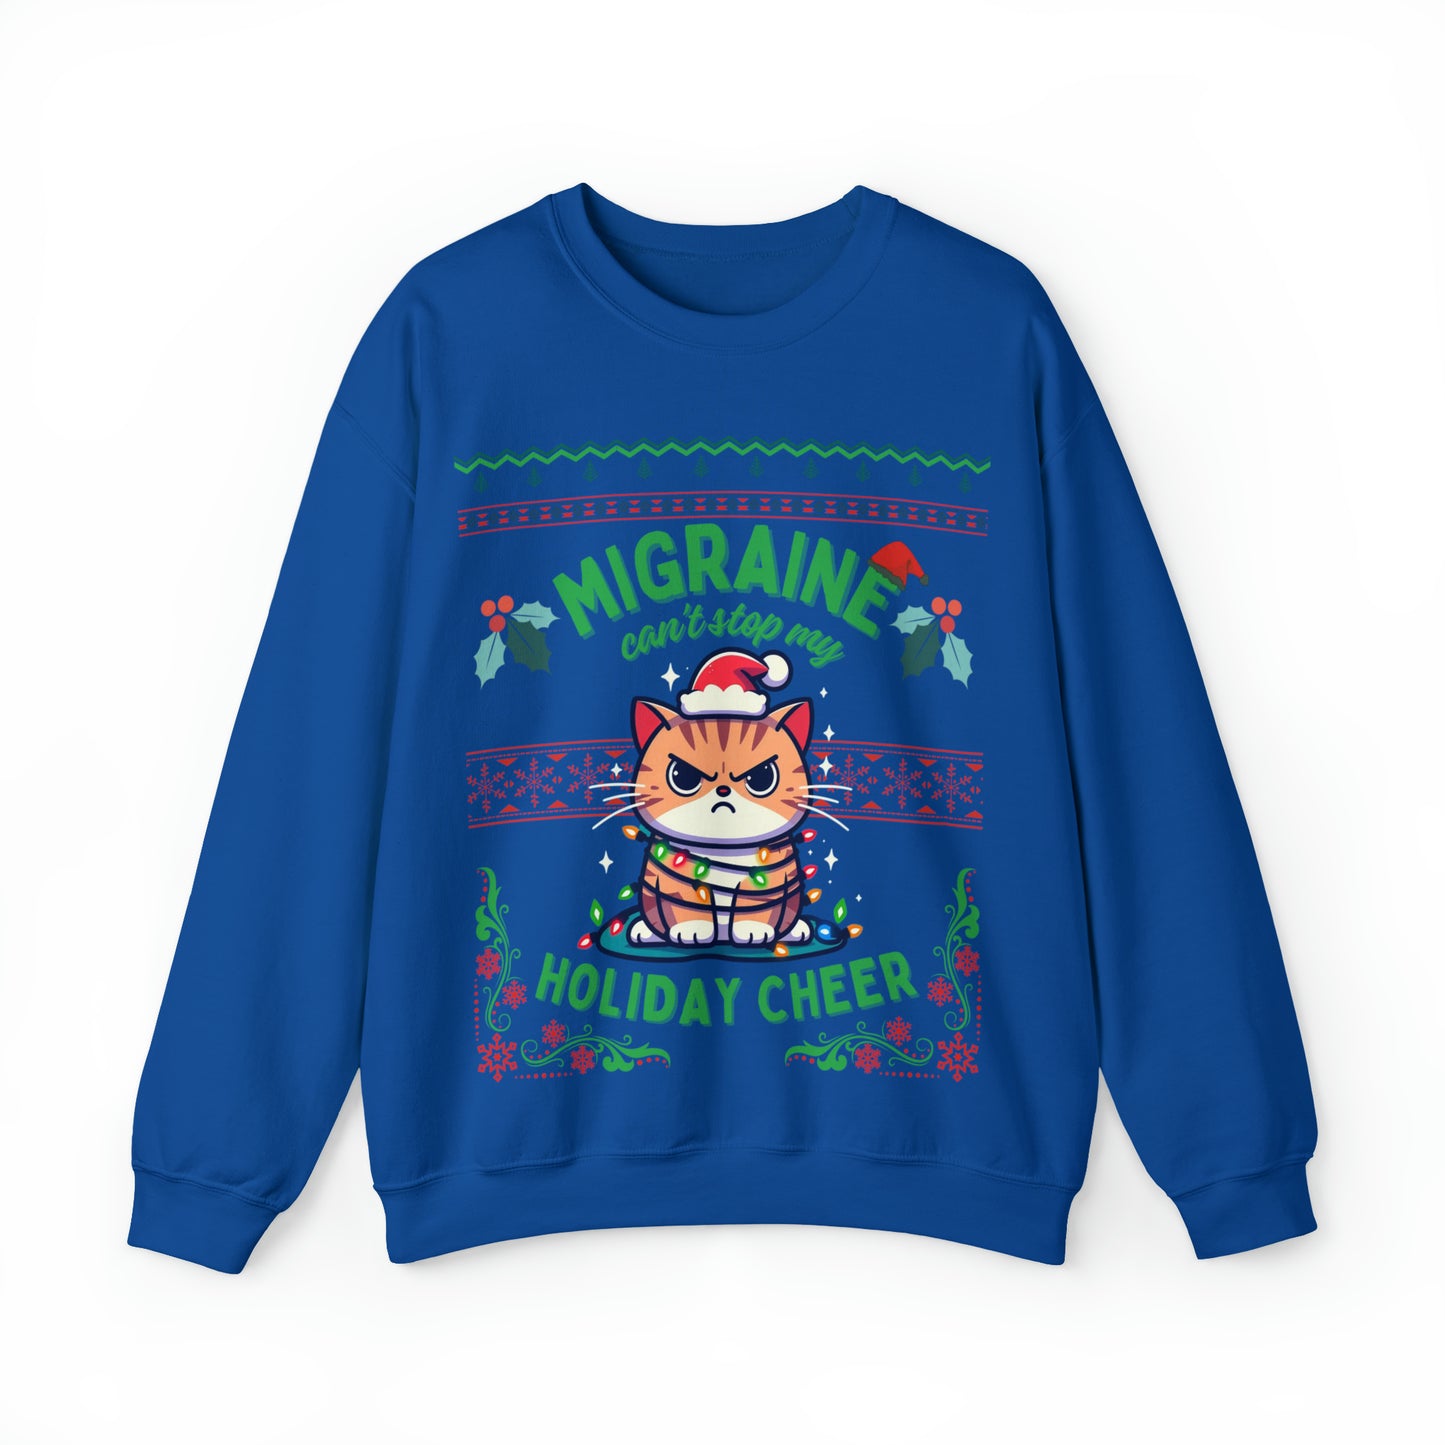 Migraine Can't Stop My Holiday Cheer (cat) Crewneck Sweatshirt